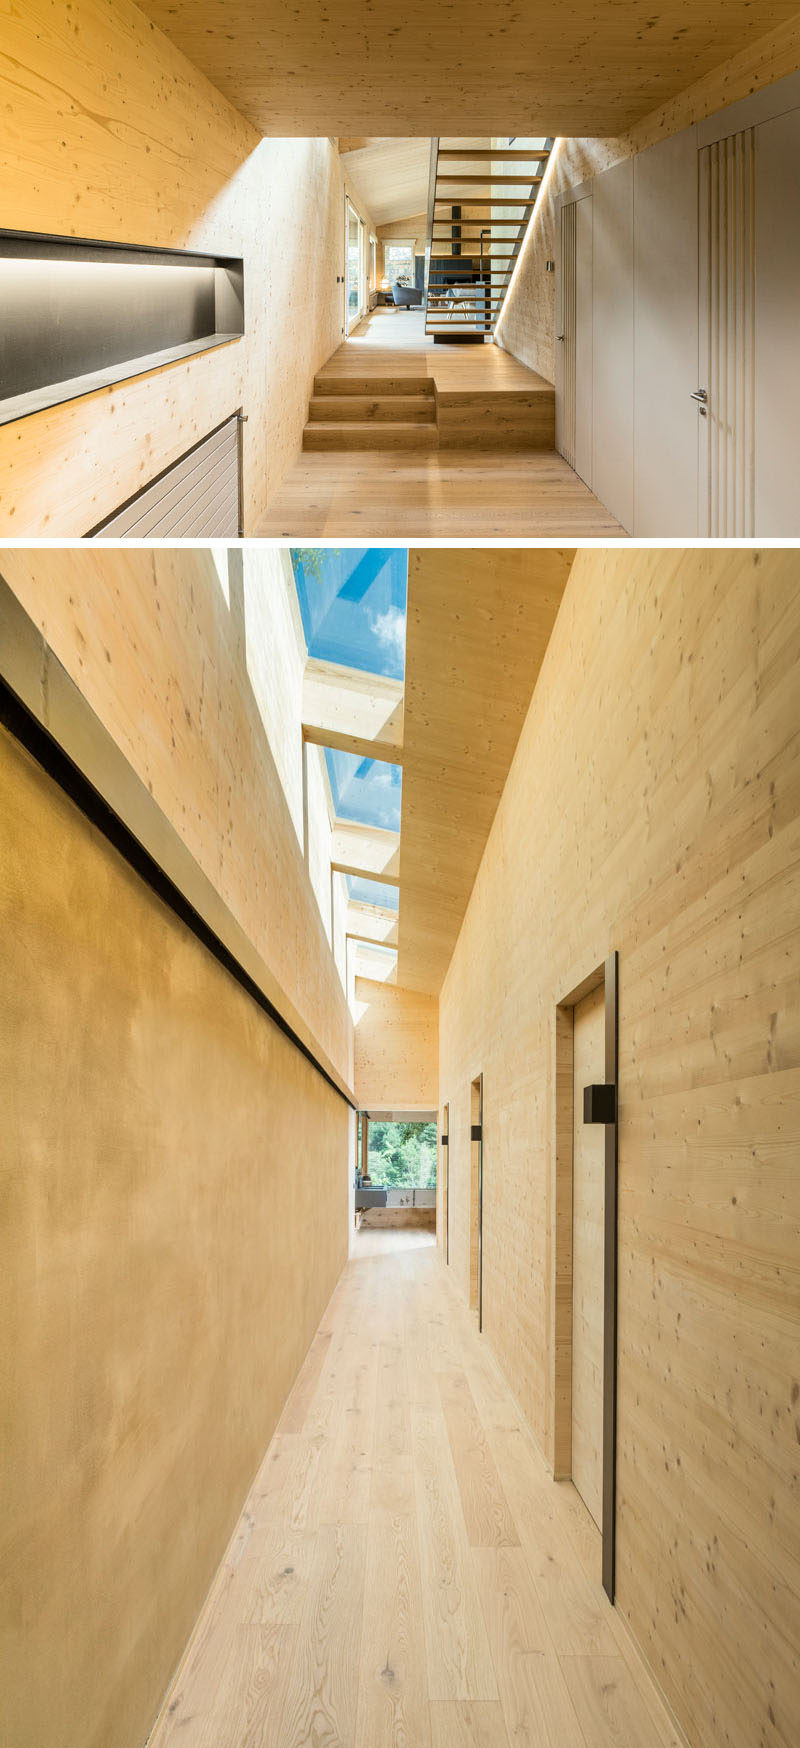 В основном это деревянный коридор, ведущий в спальне и ванную комнату, с потолочными окнами, позволяющими естественным свету проникать в интерьер, # Прихожая # Световые люки